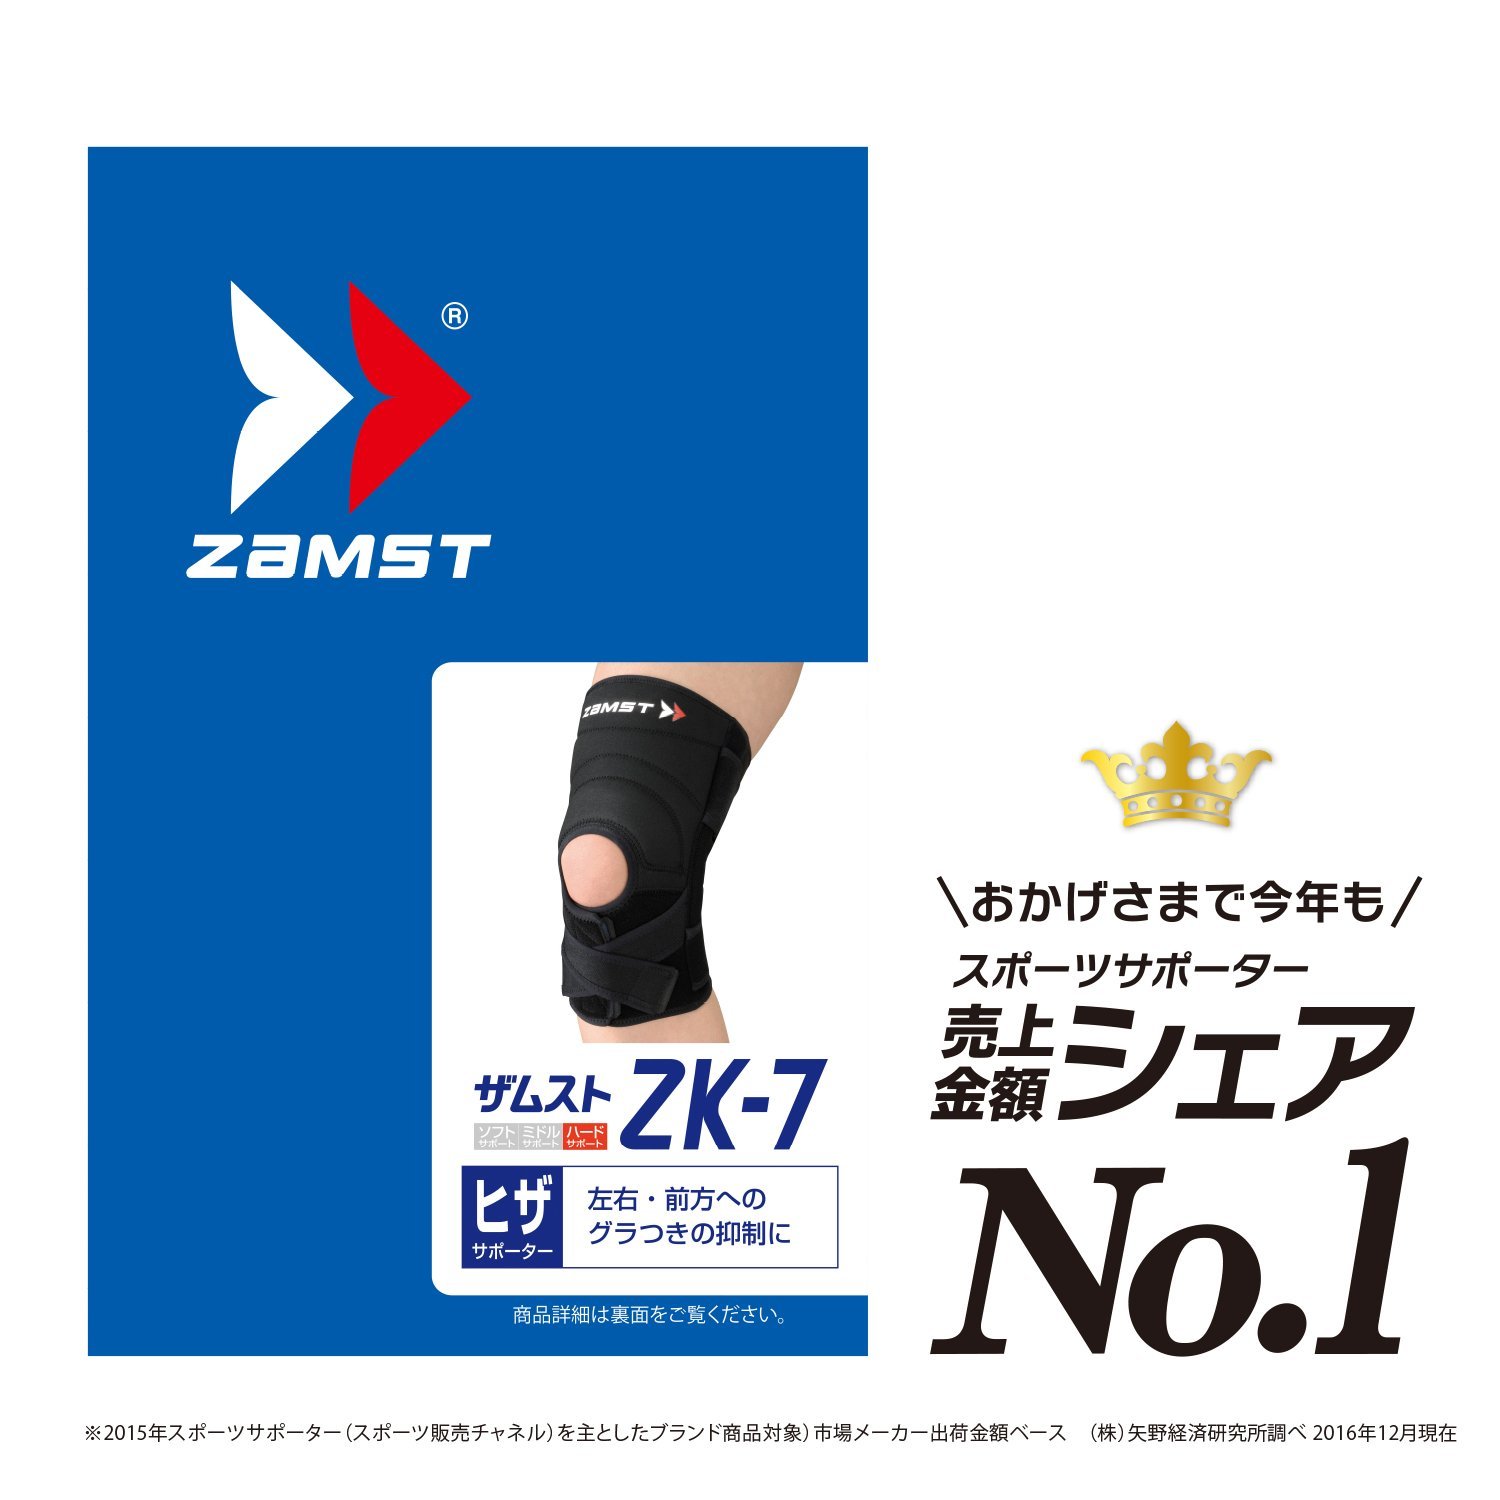 ザムストzk-7の口コミは正しいのか！？膝用サポーターはサイズが重要！ | アウトドアスタイルのある生活